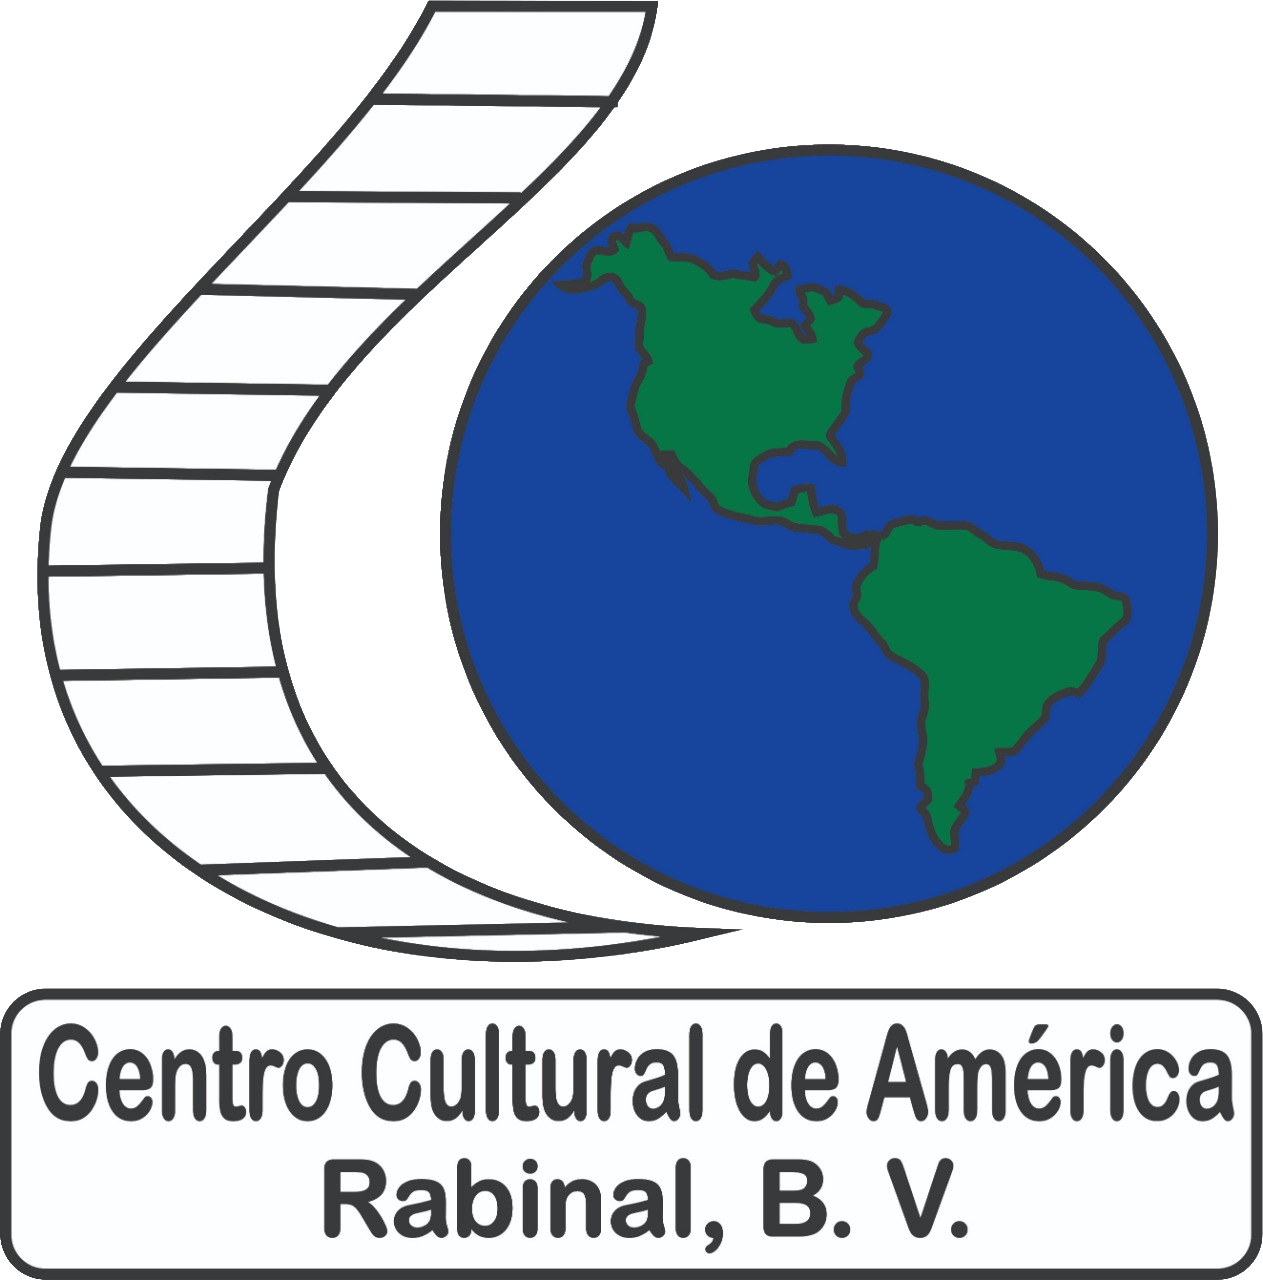 Centro Cultural de América Rabinal